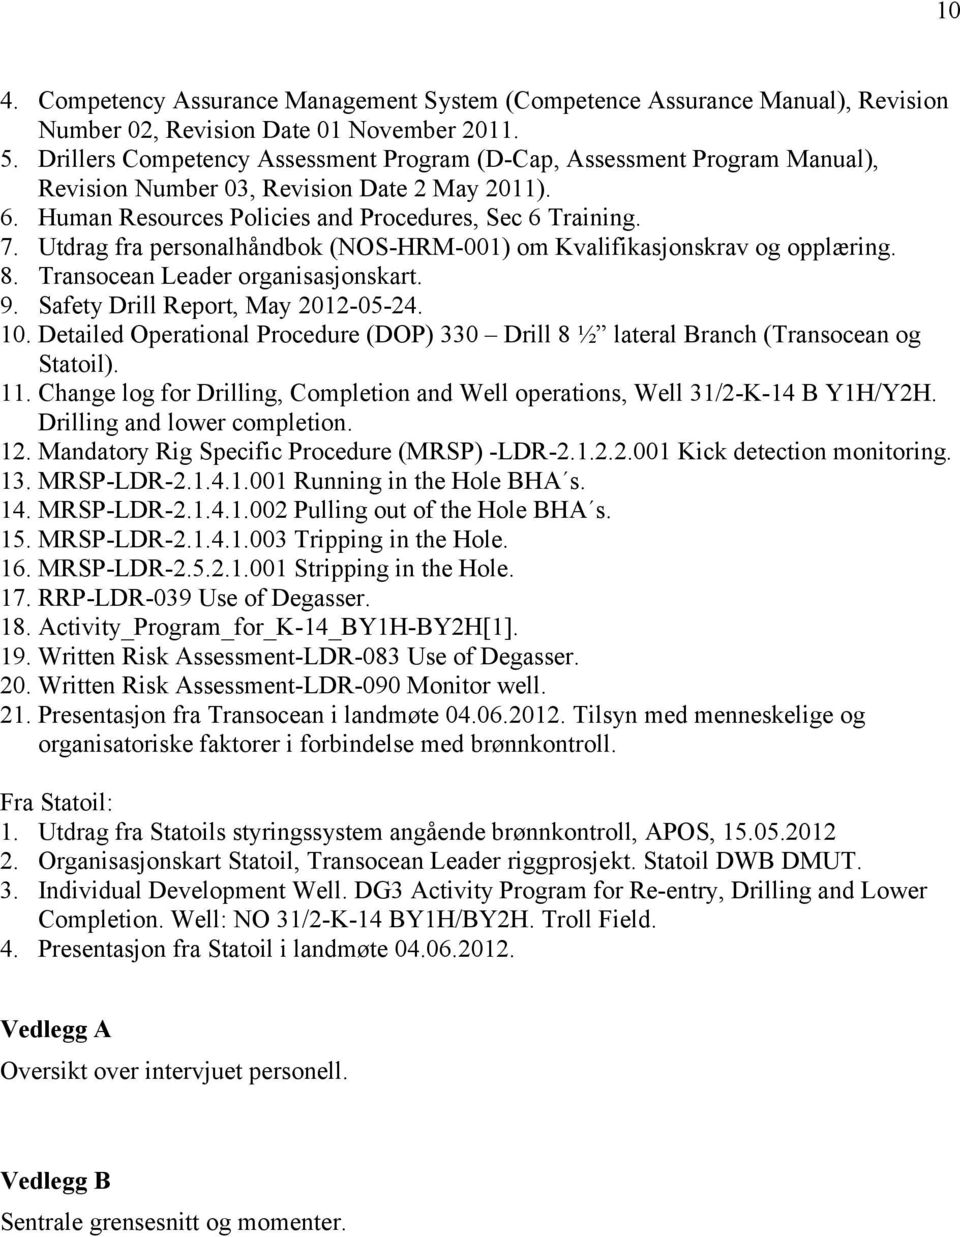 Utdrag fra personalhåndbok (NOS-HRM-001) om Kvalifikasjonskrav og opplæring. 8. Transocean Leader organisasjonskart. 9. Safety Drill Report, May 2012-05-24. 10.